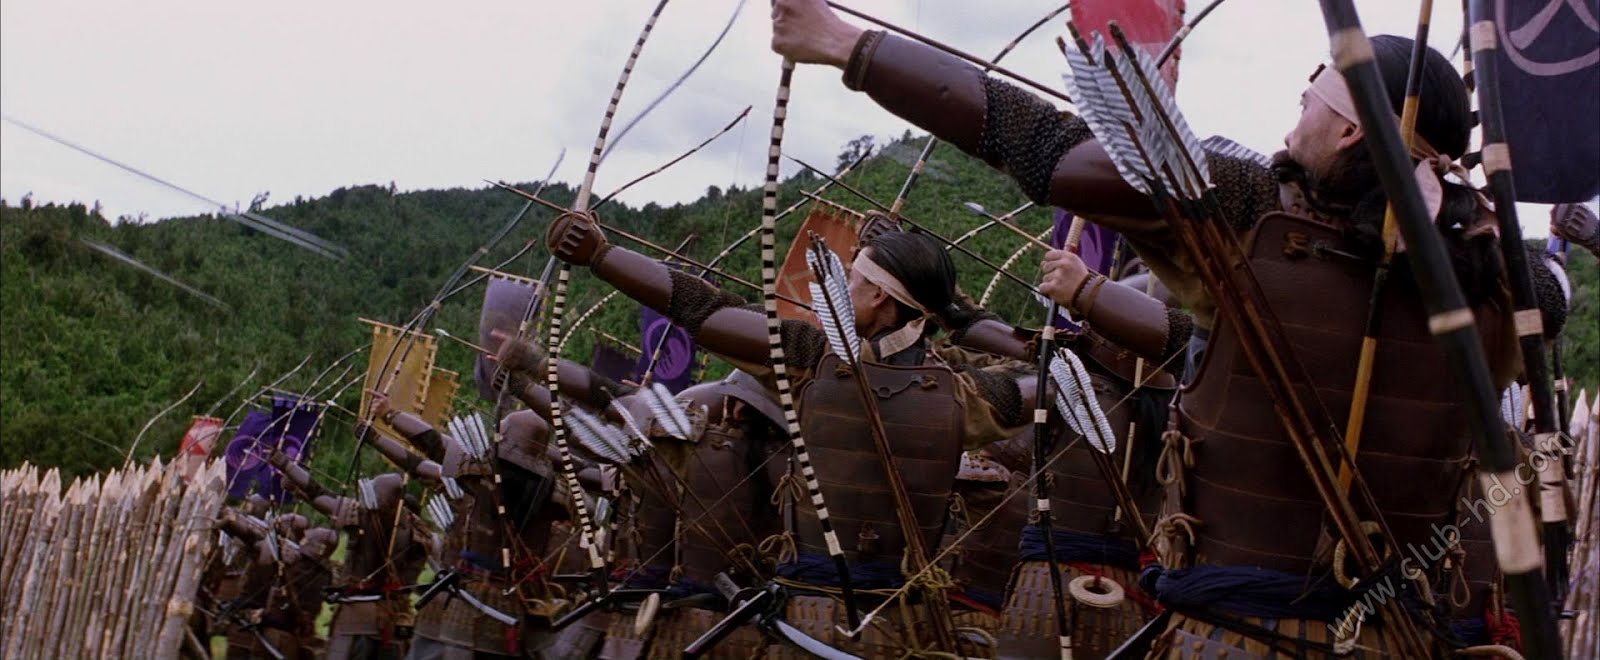 The Last Samurai (2003) 1080p BDRip Dual Latino-Ingles [Subt. Esp-Ing] (Aventura. Acción)